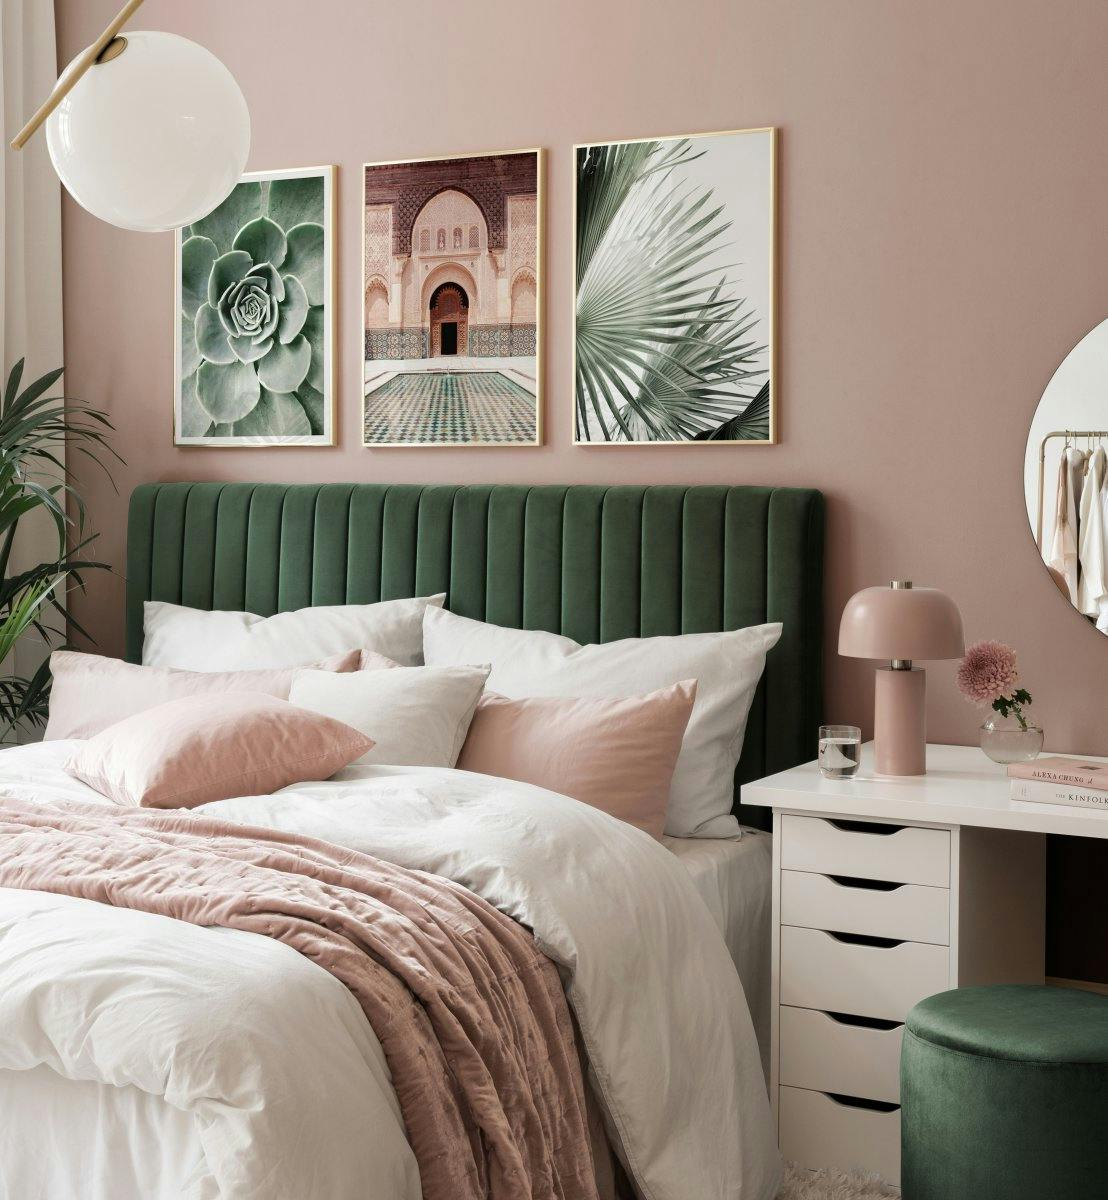 Fotografier af blade og arkitektur i grøn og beige til soveværelset